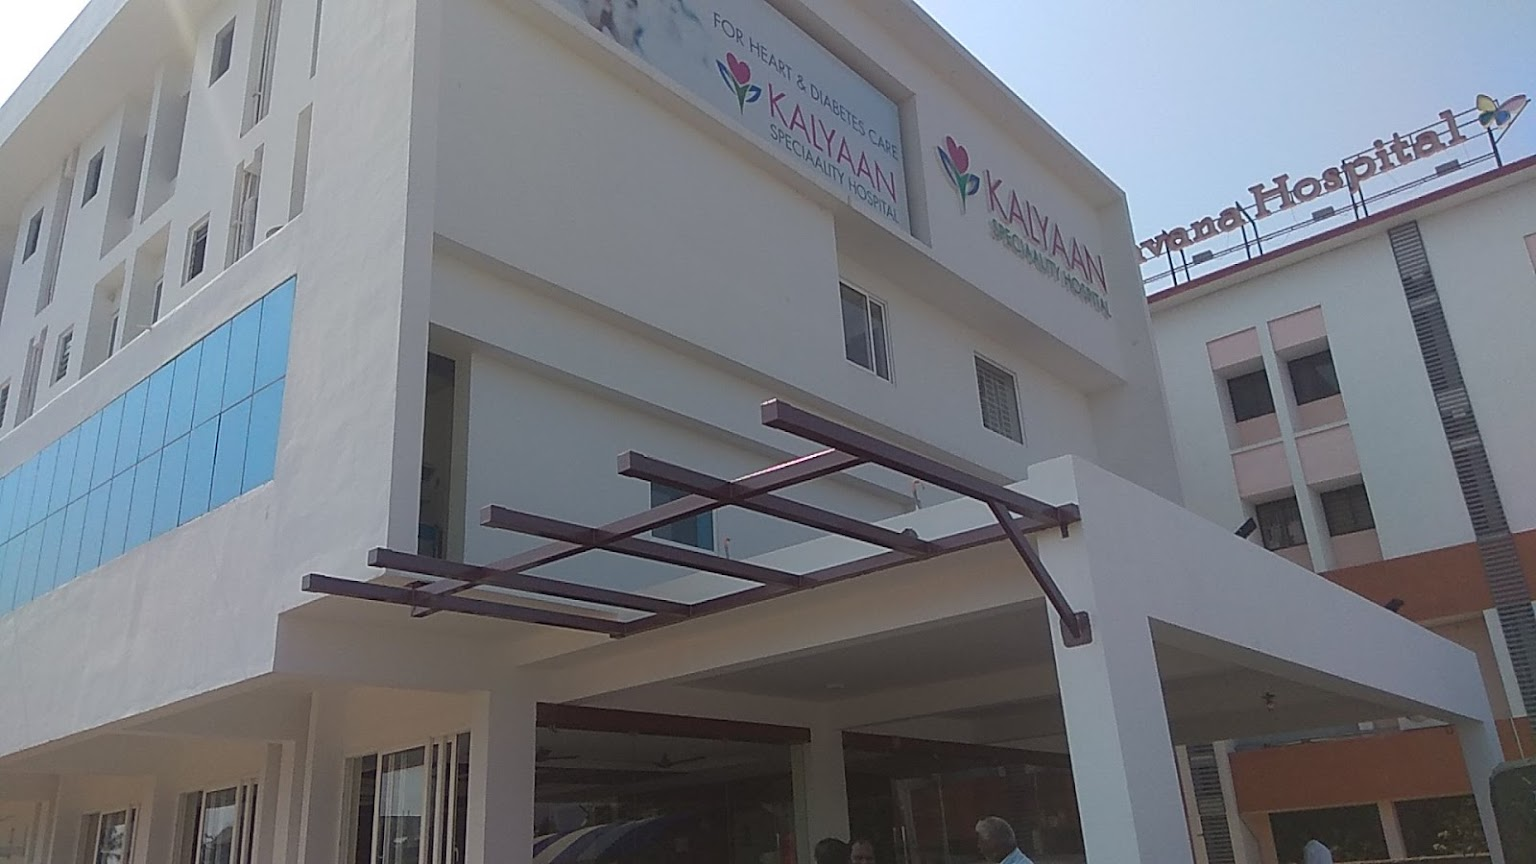 Kalyaan Speciality Hospital